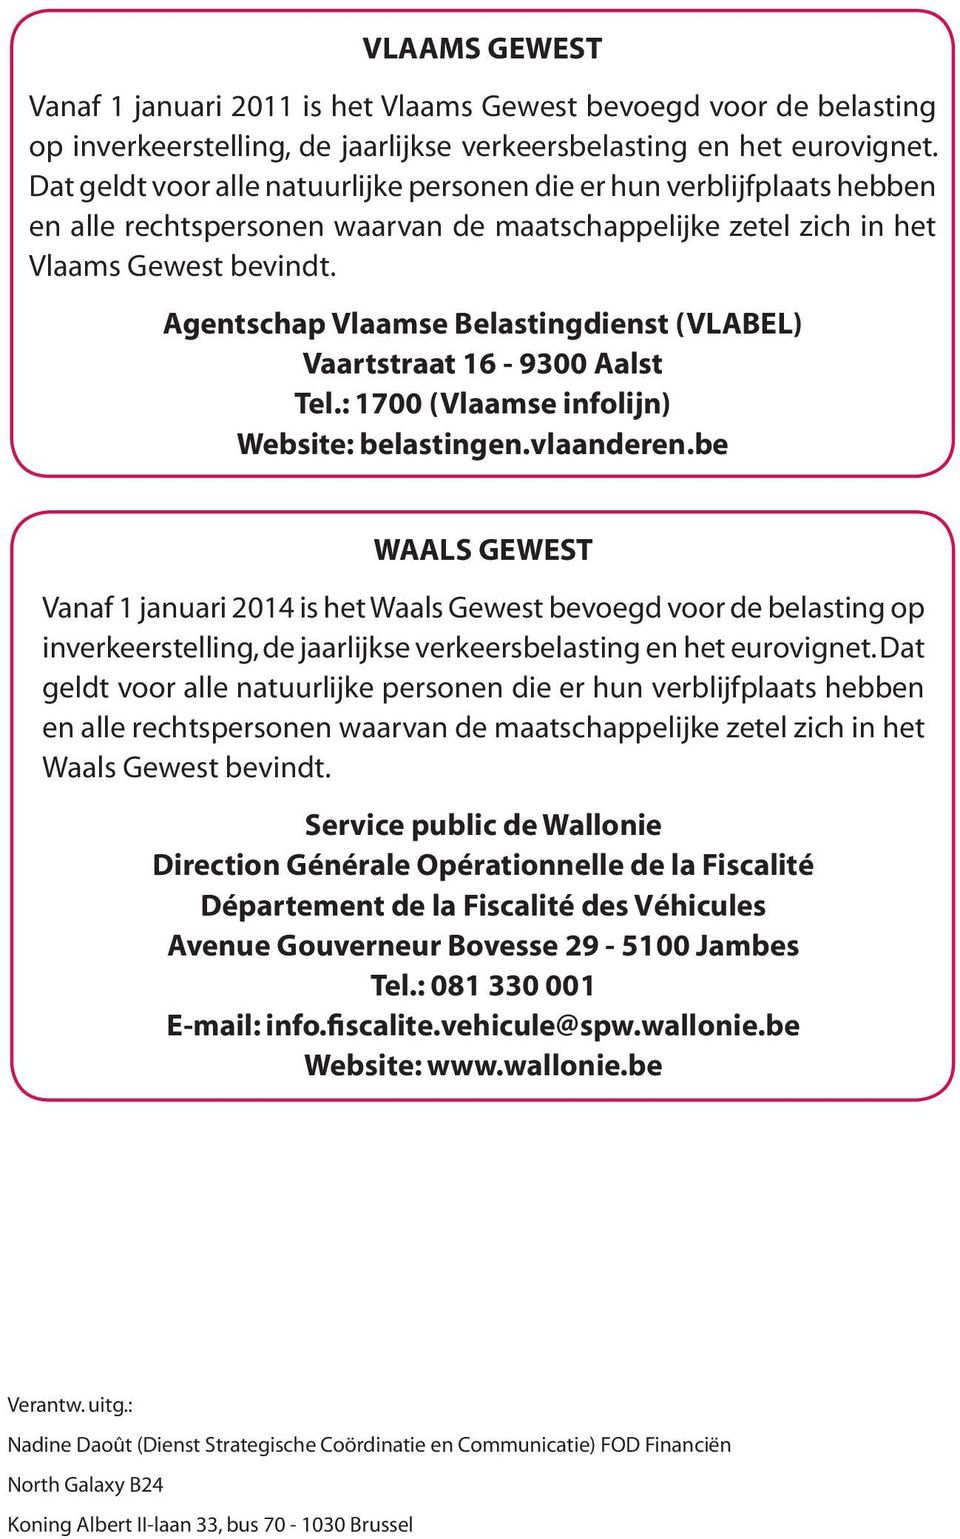 Agentschap Vlaamse Belastingdienst (VLABEL) Vaartstraat 16-9300 Aalst Tel.: 1700 (Vlaamse infolijn) Website: belastingen.vlaanderen.